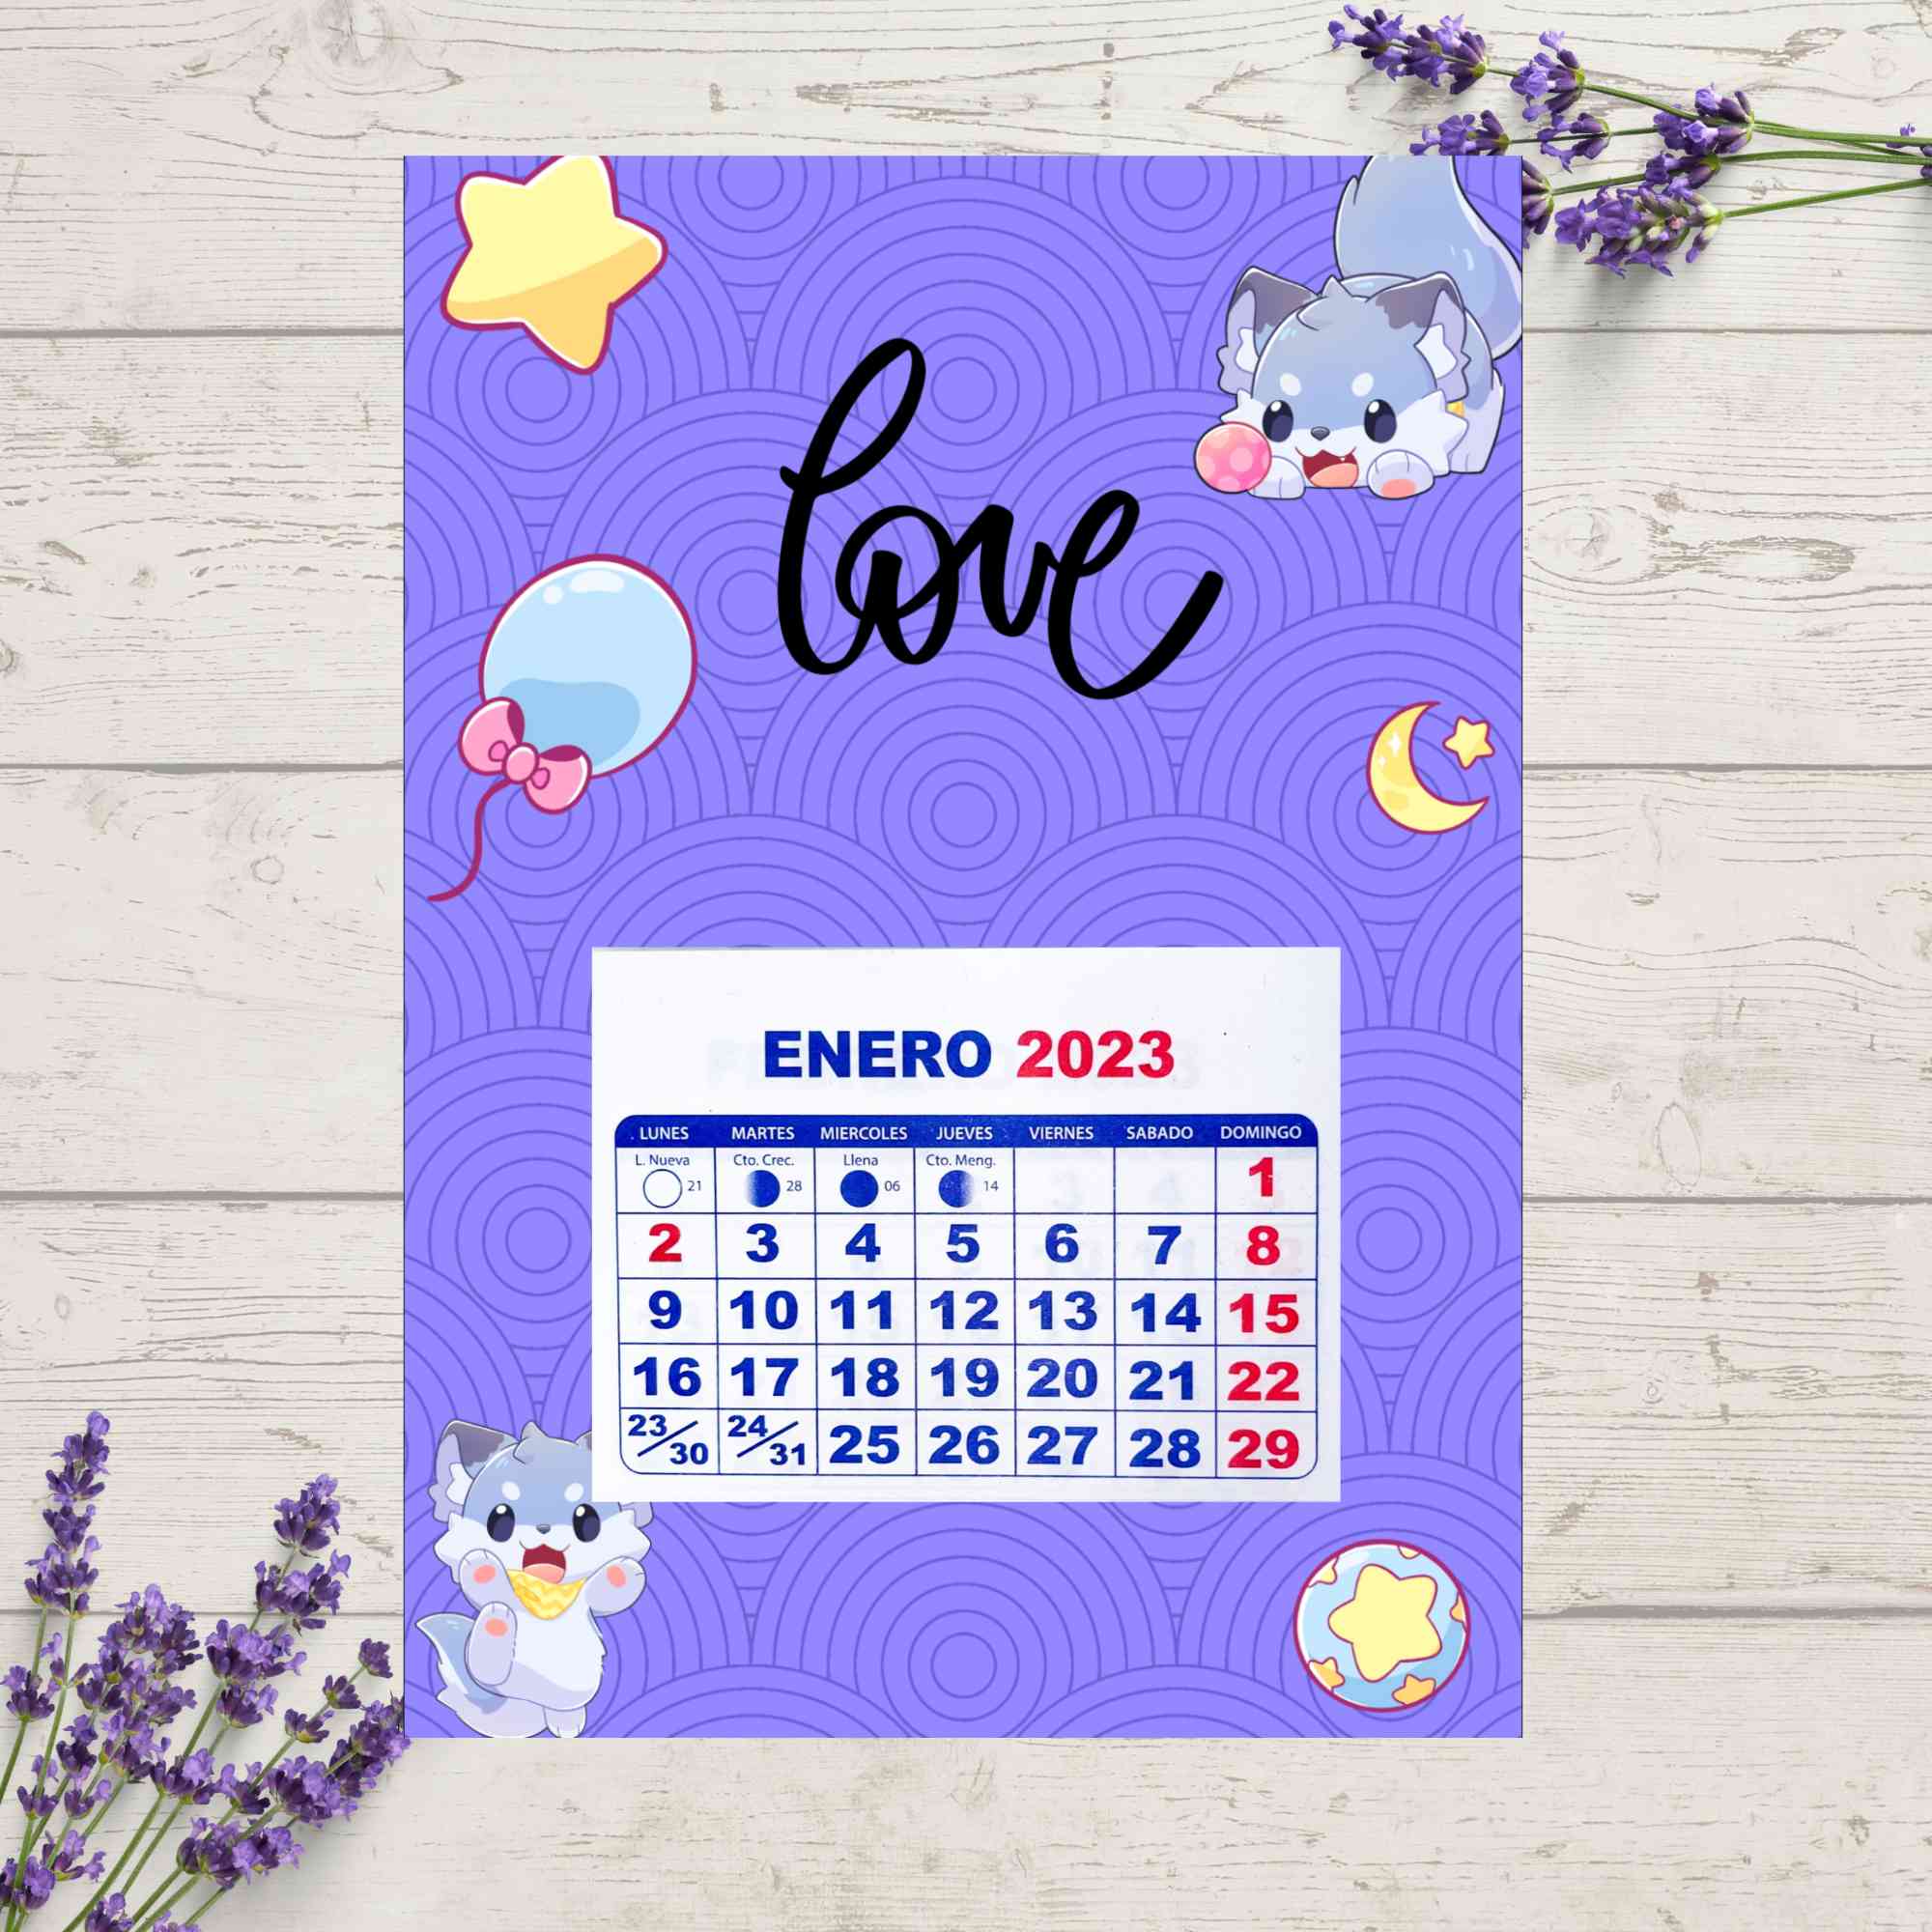 Calendario Love